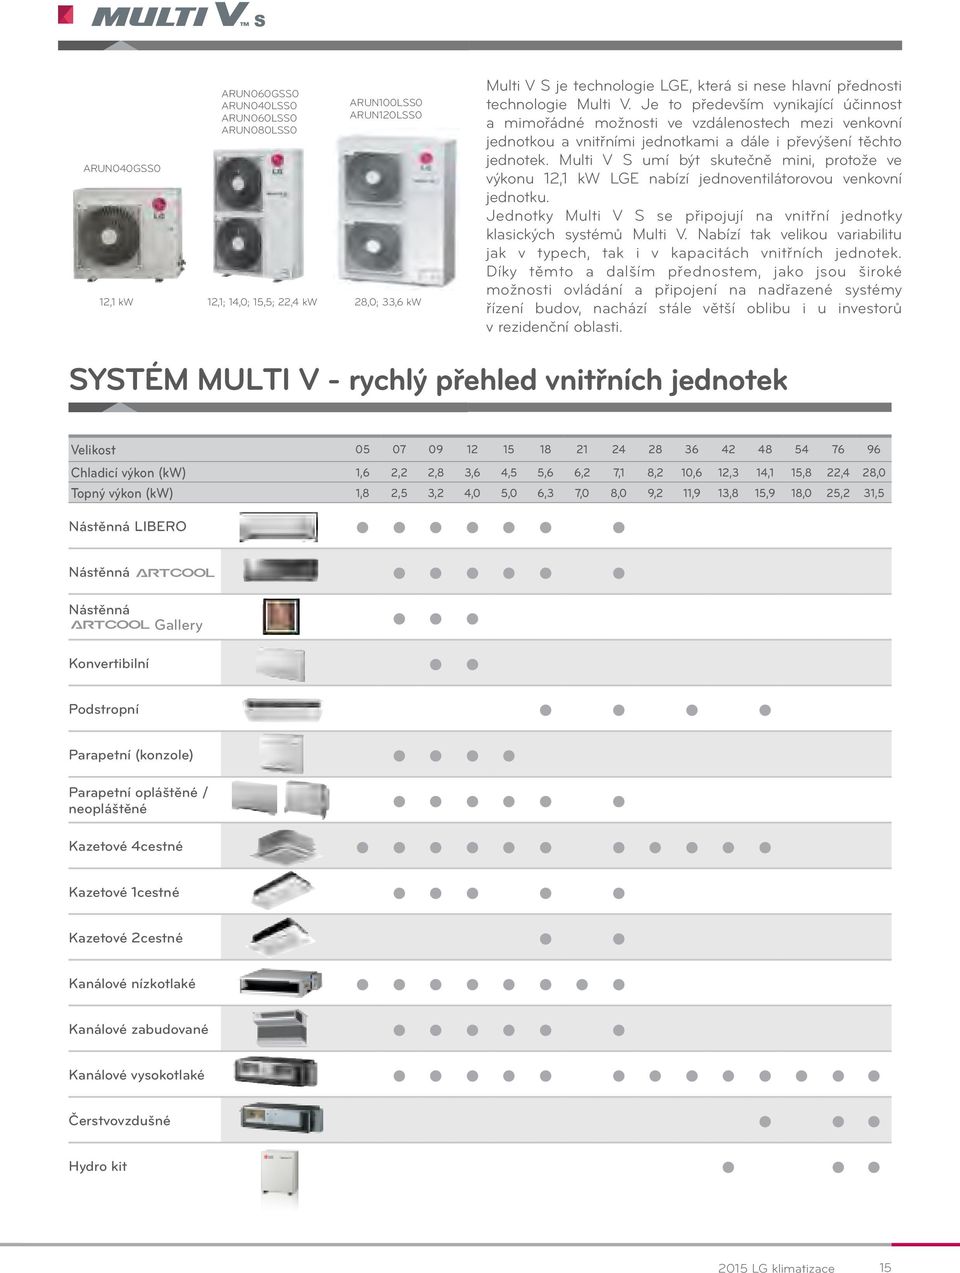 Multi V S umí být skutečně mini, protože ve výkonu 12,1 k LGE nabízí jednoventilátorovou venkovní jednotku. Jednotky Multi V S se připojují na vnitřní jednotky klasických systémů Multi V.